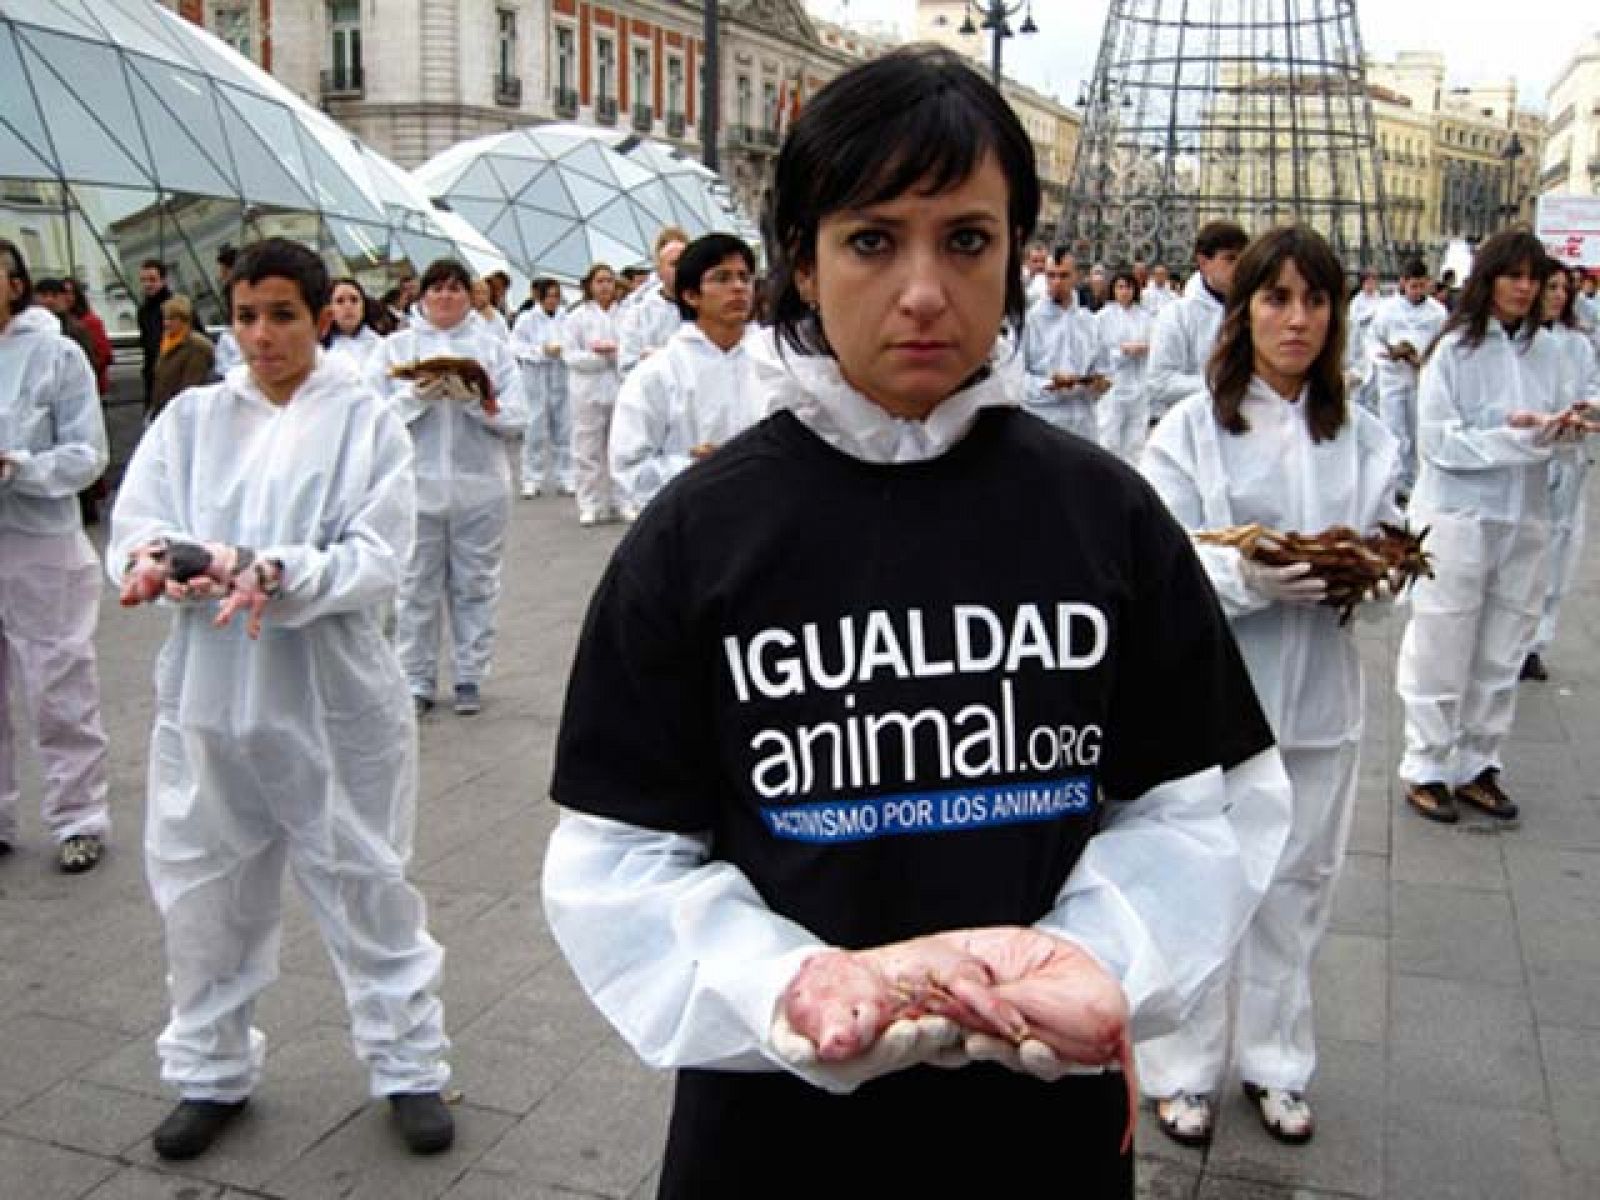 On Off: Manifestación de Igualdad Animal